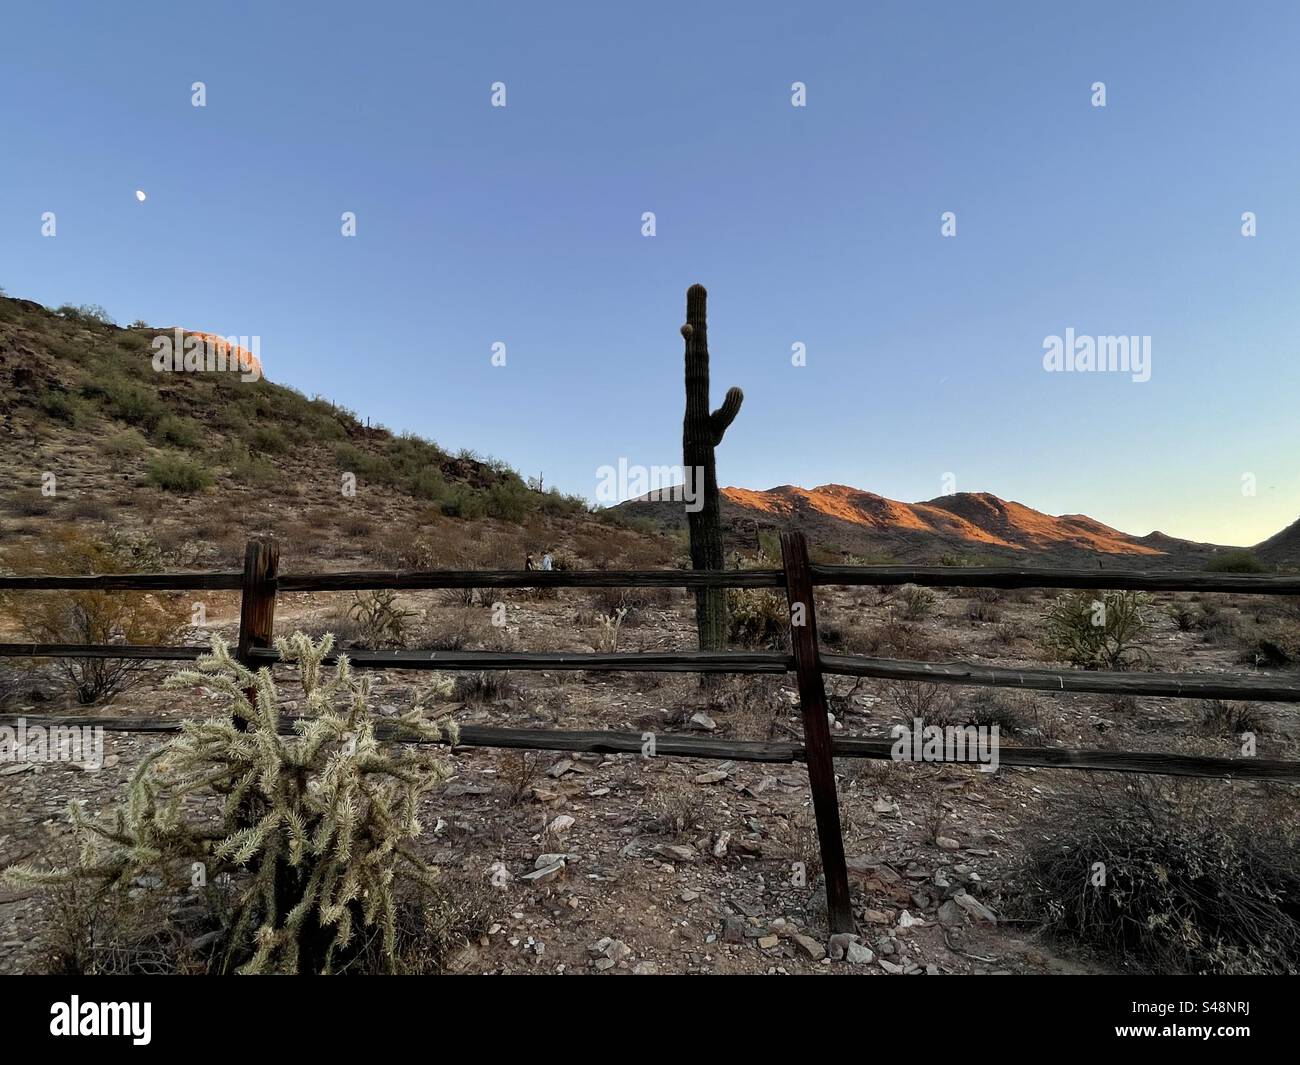 Alpenglow sur les montagnes du désert, Cactus géant de Saguaro, cactus de cholla, clôture de rail fendu, désert de Sonora, Phoenix Mountains Preserve, Arizona Banque D'Images